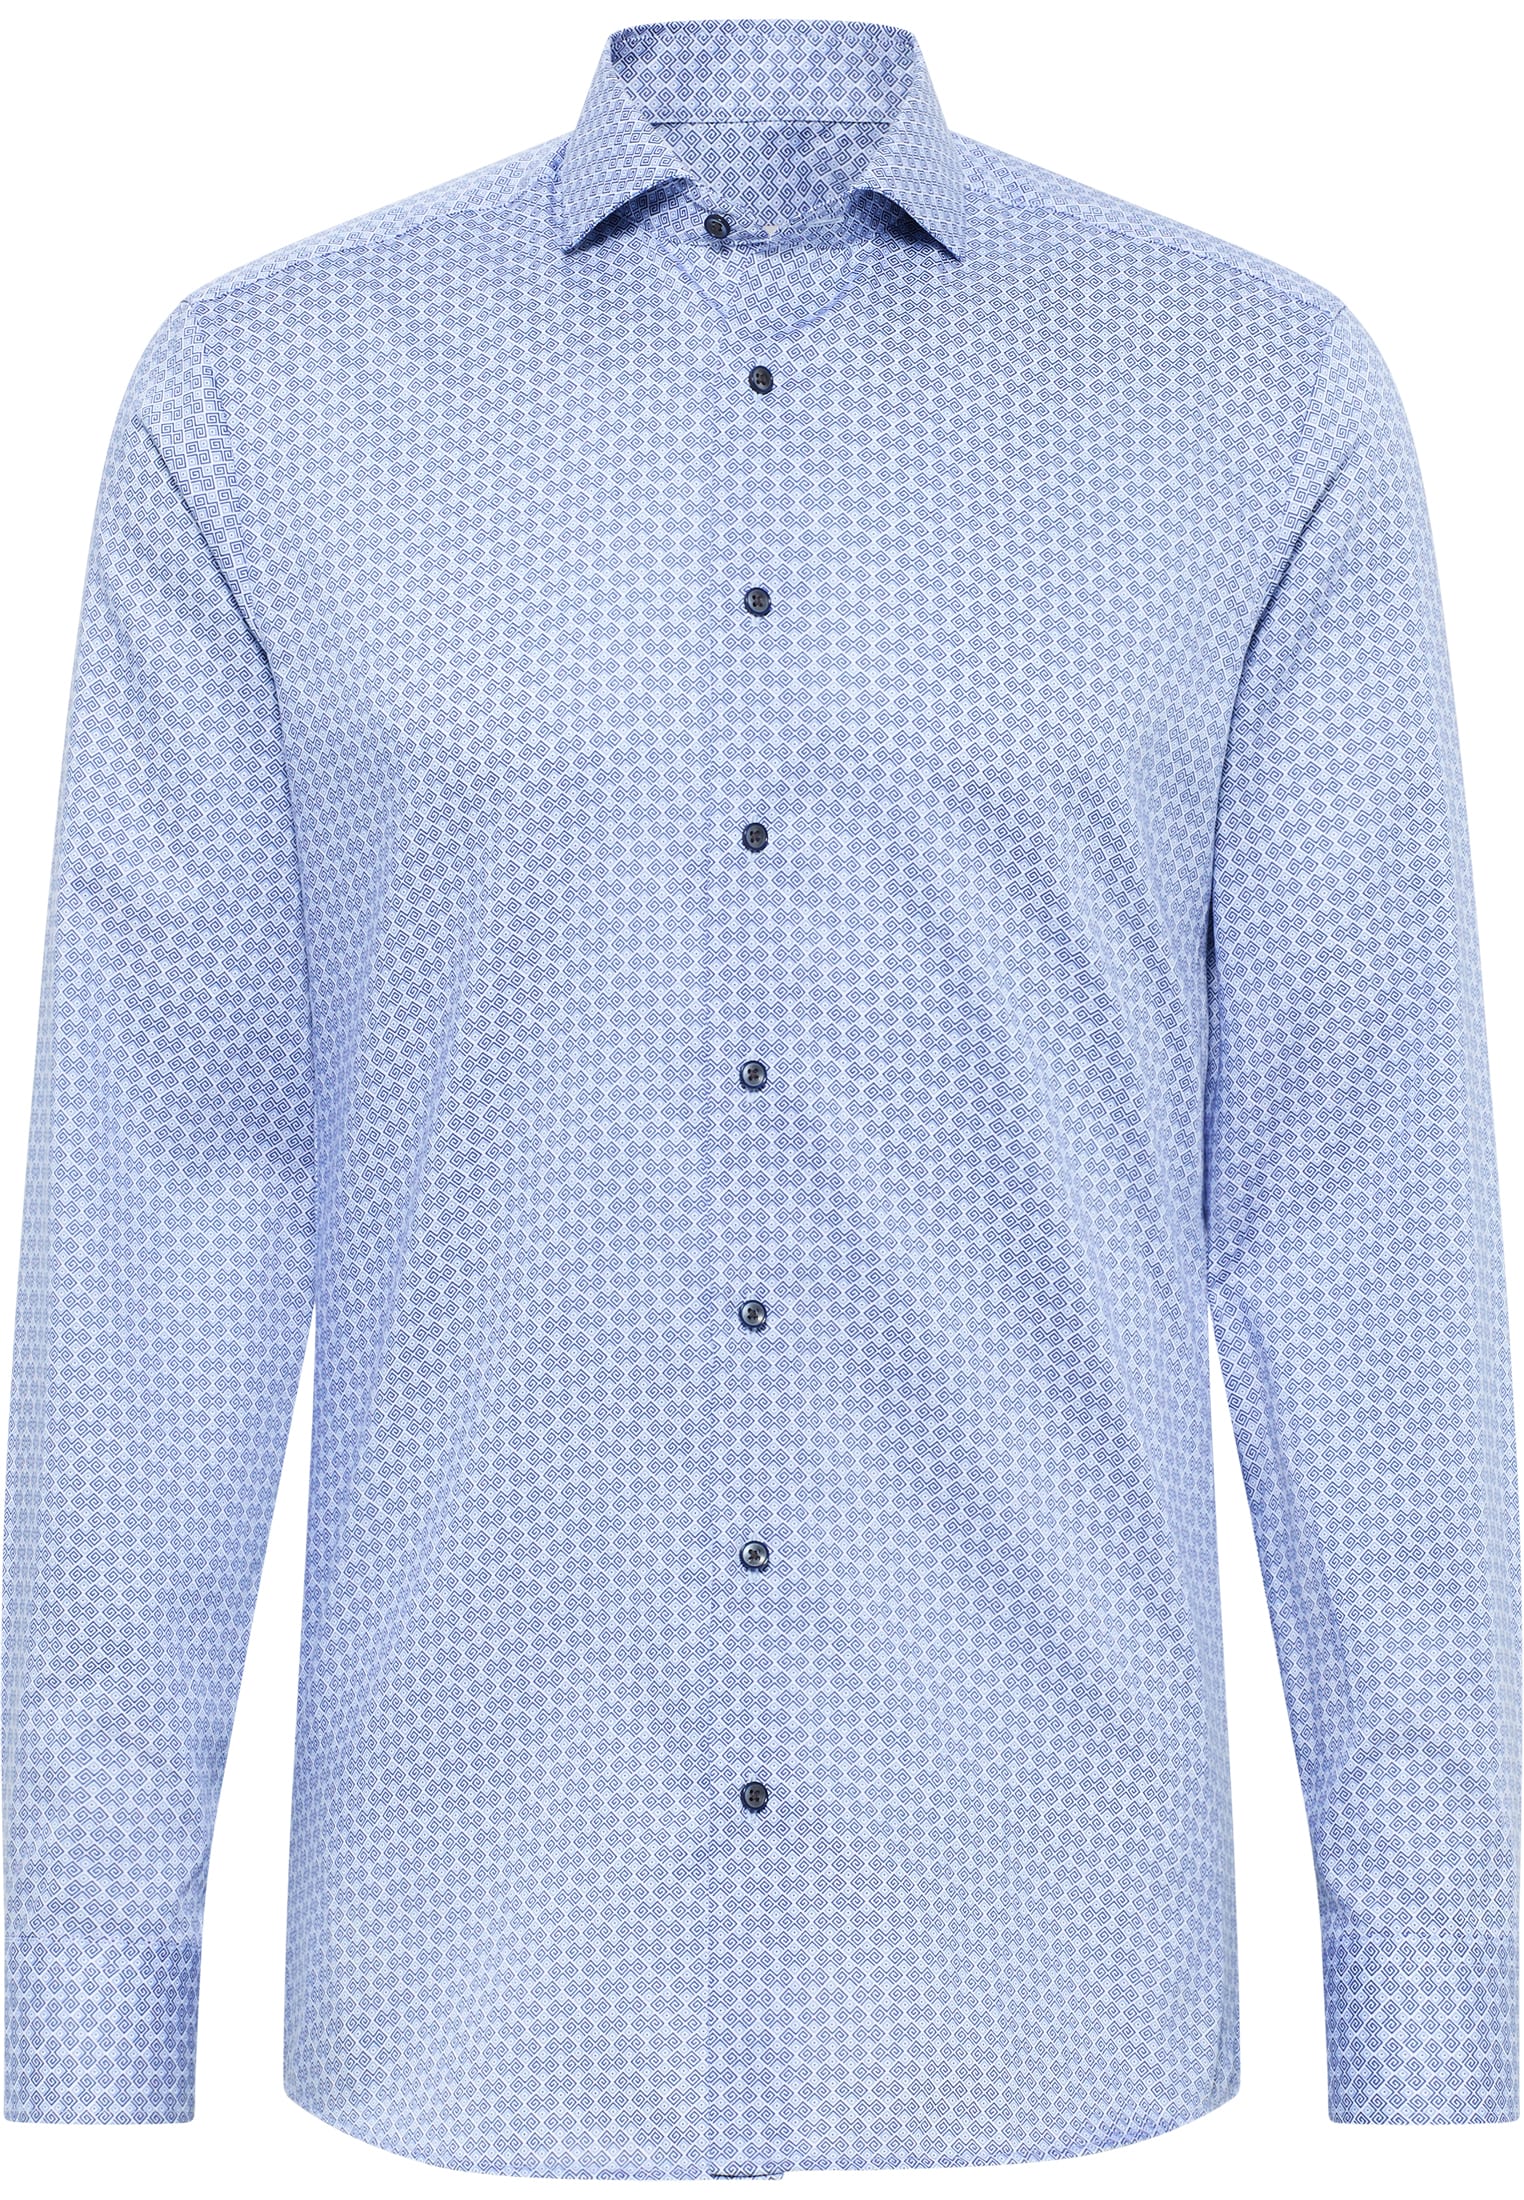 SLIM FIT Shirt in sky blue printed